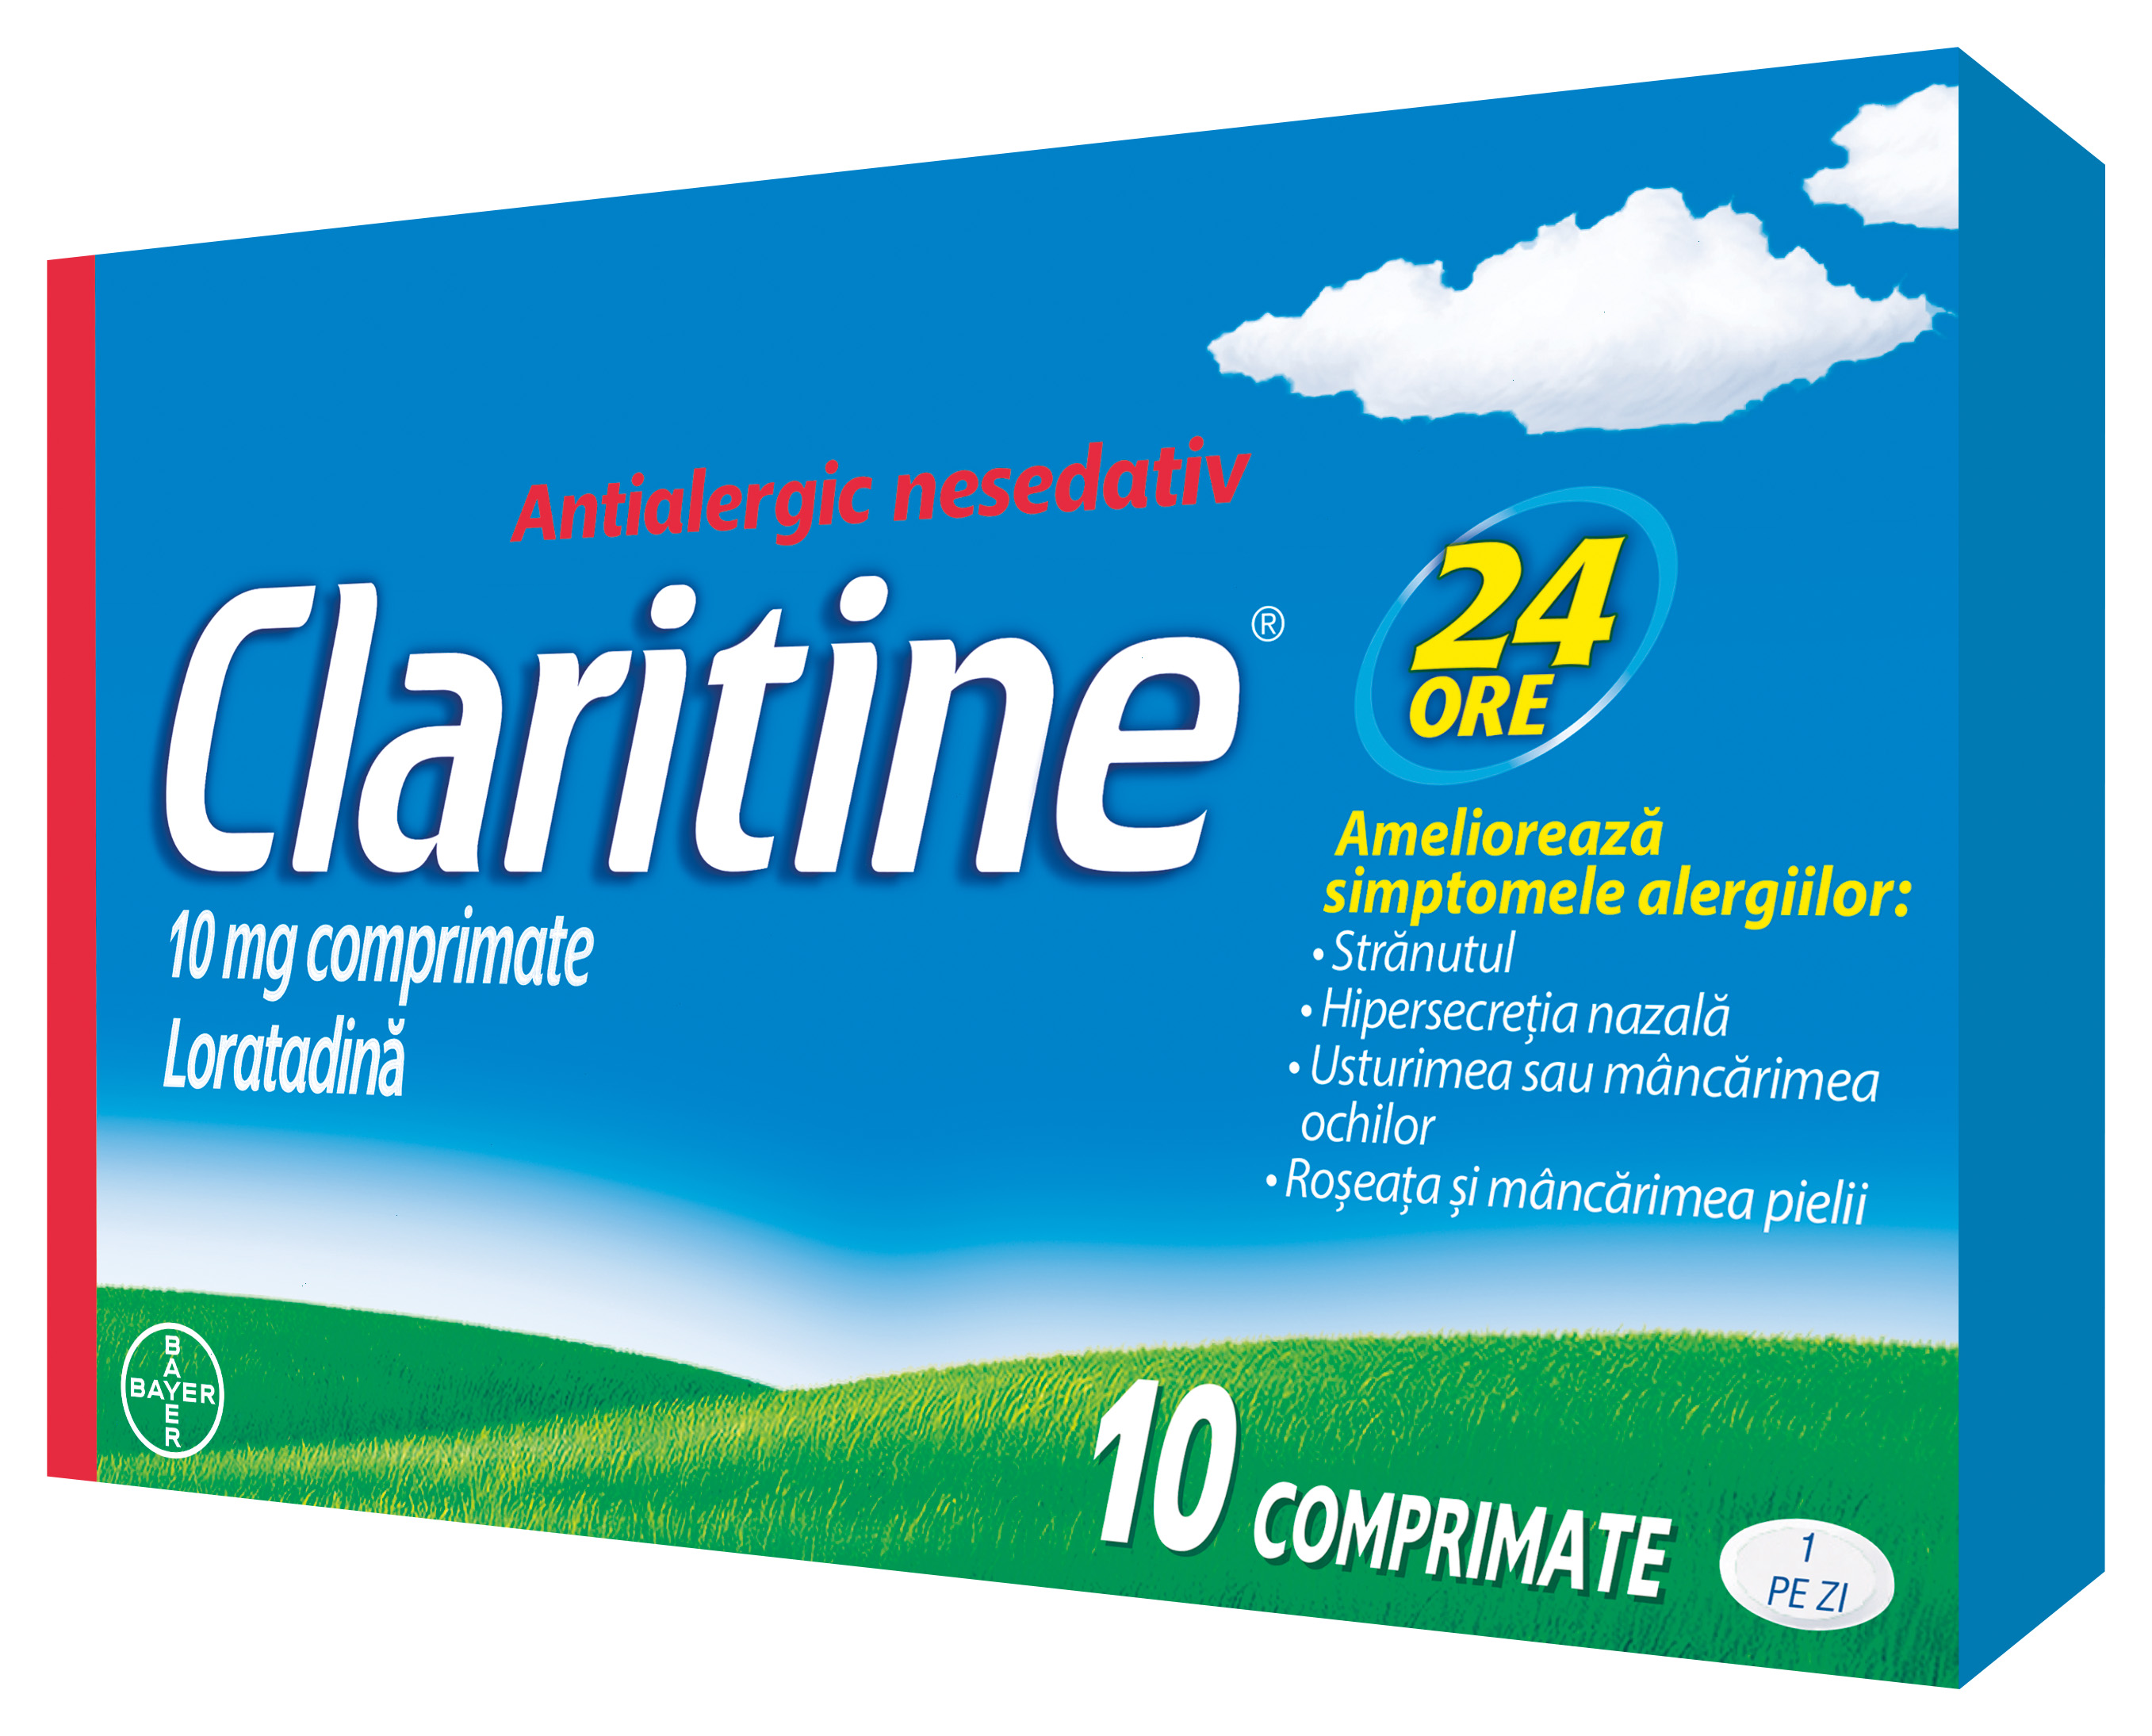 claritin cat mint